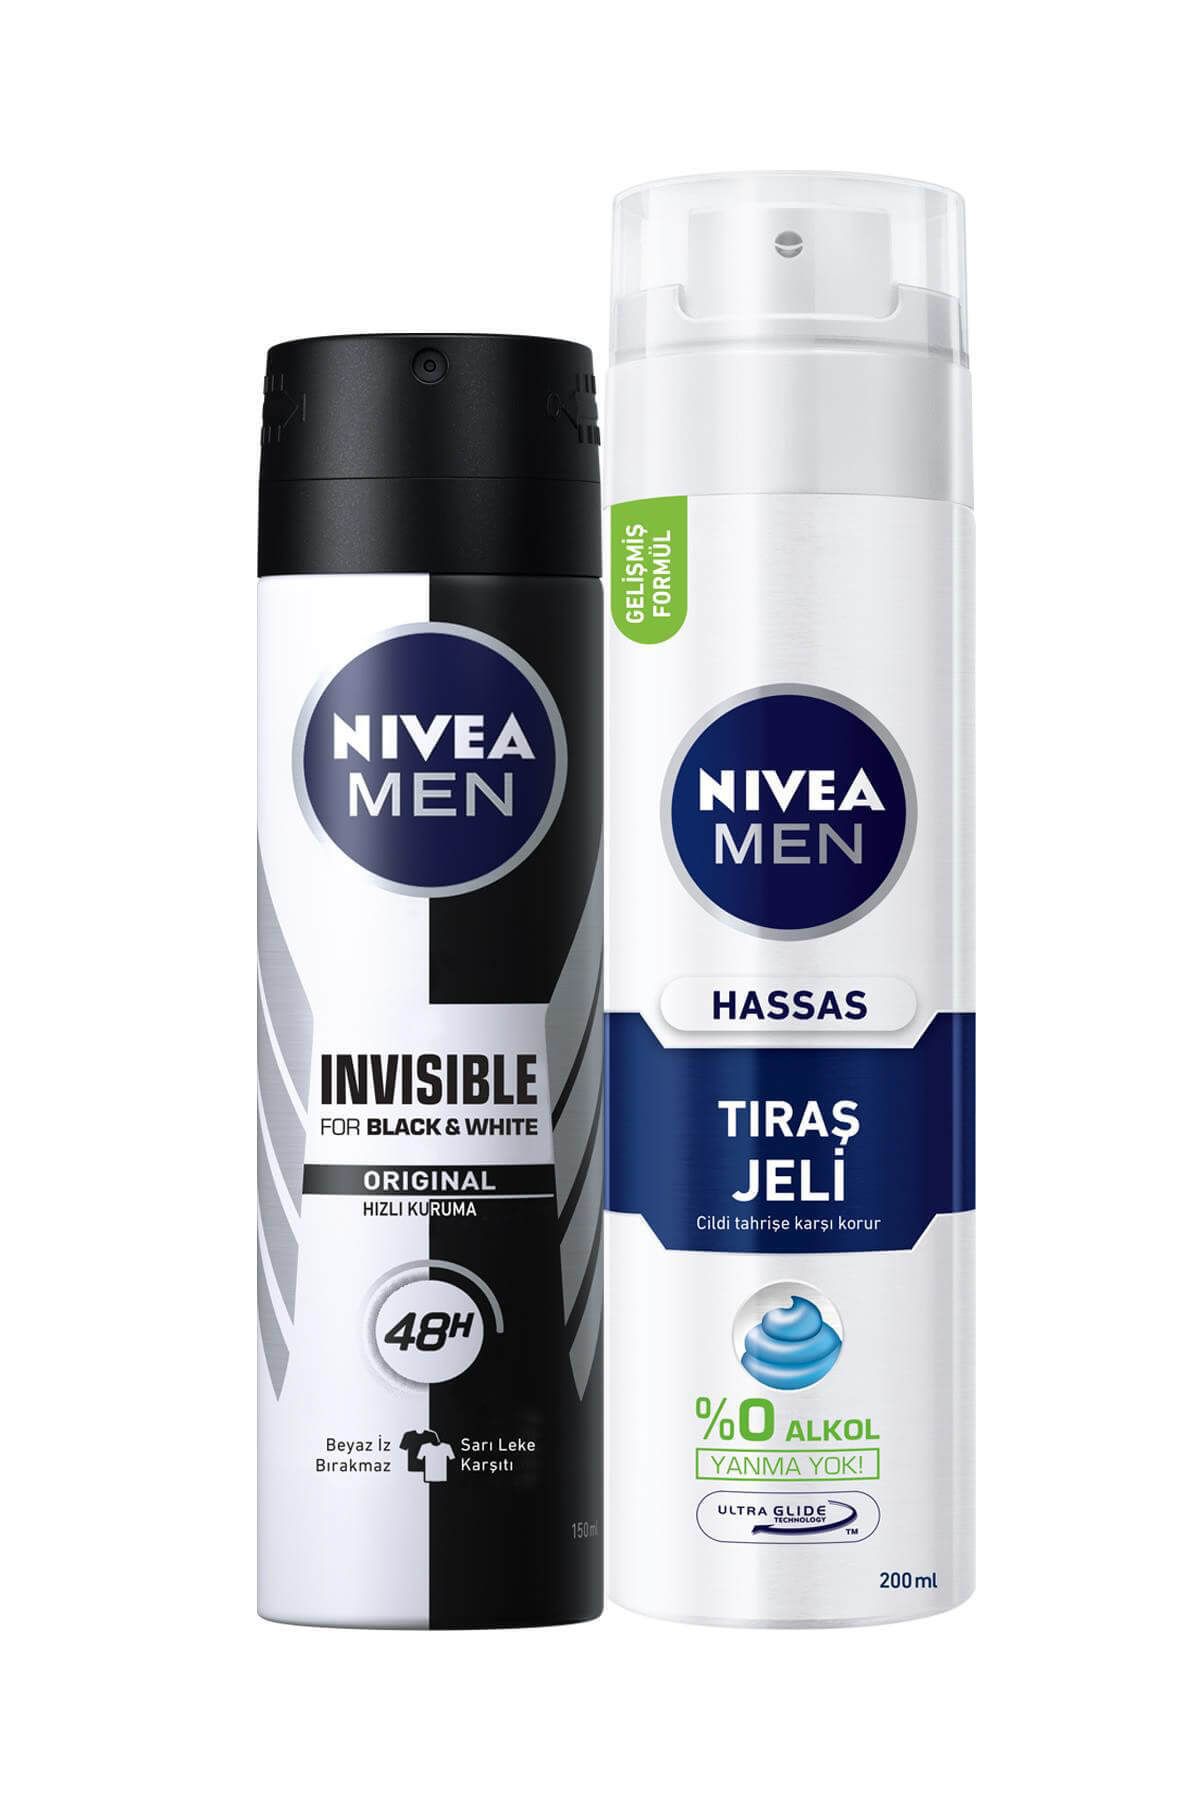 NIVEA اسپری مردانه ضدعرق مخفی سیاه و سفید اصل 150 میلی لیتر، ژل اصلاح پوست حساس 200 میلی لیتر